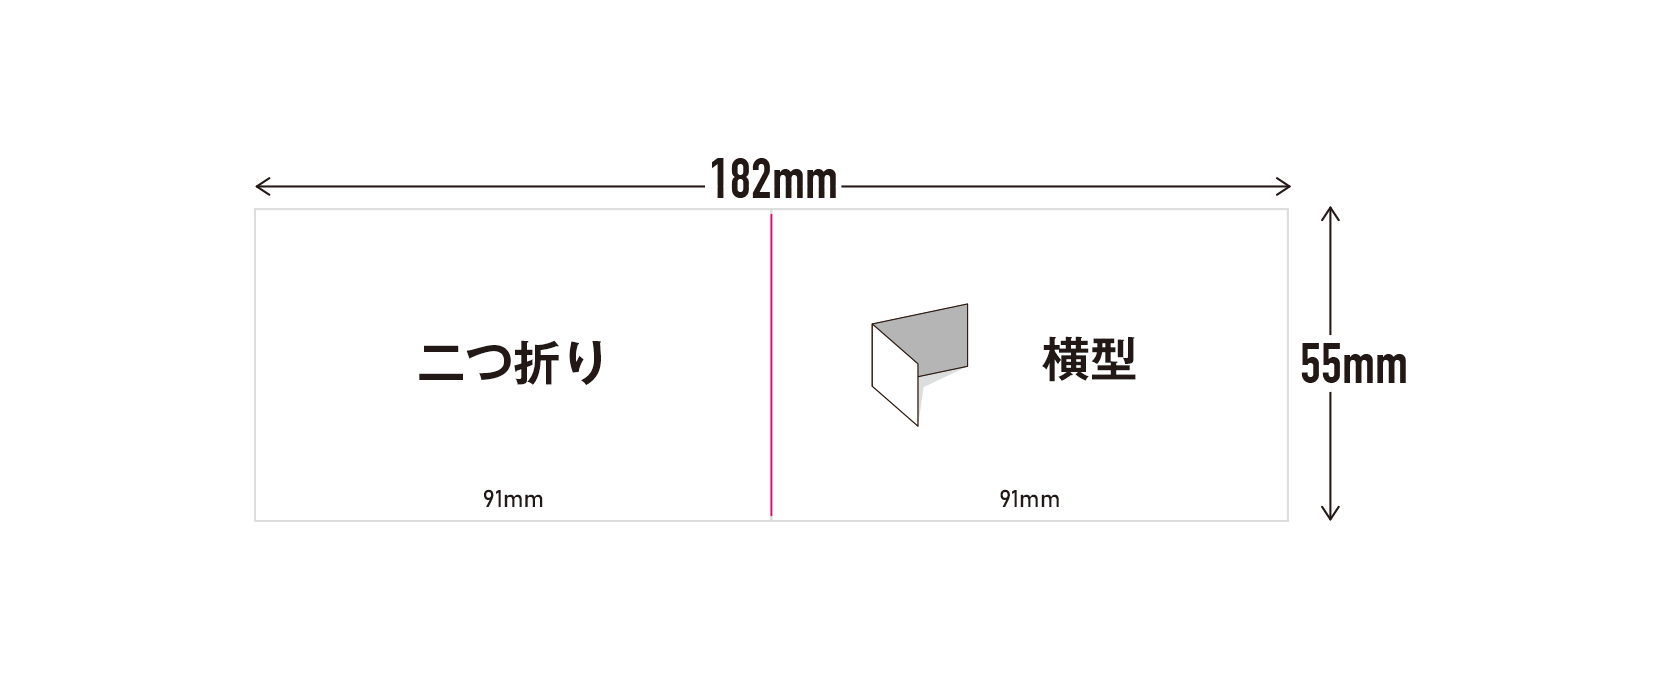 2つ折り 横型サイズ（182×55mm）